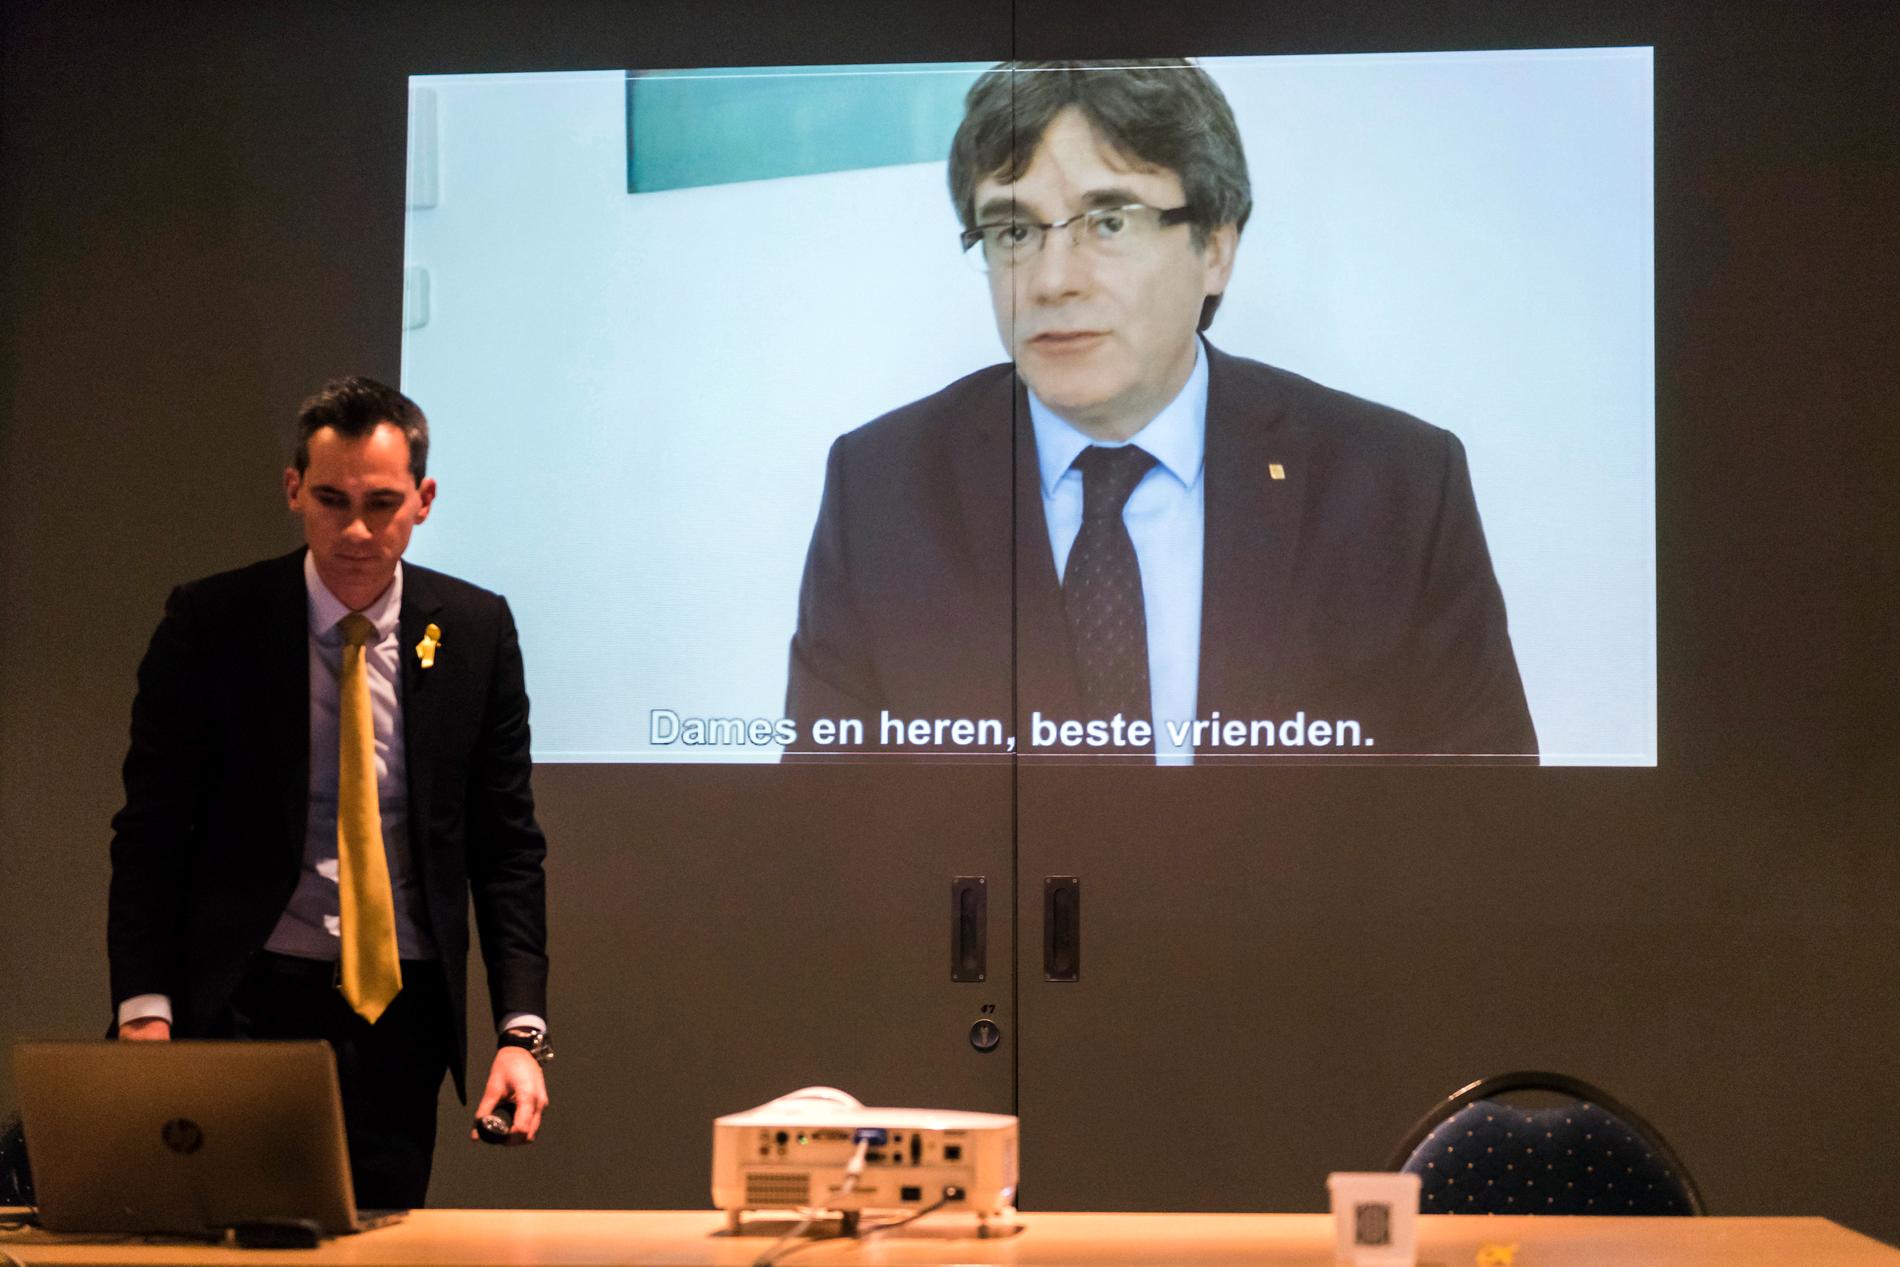 Den landsflyktige katalanske separatistledaren Carles Puigdemont har nära band till det flamländska separatistpartiet NVA som nu har provocerat Spaniens centralregering. Arkivbild.